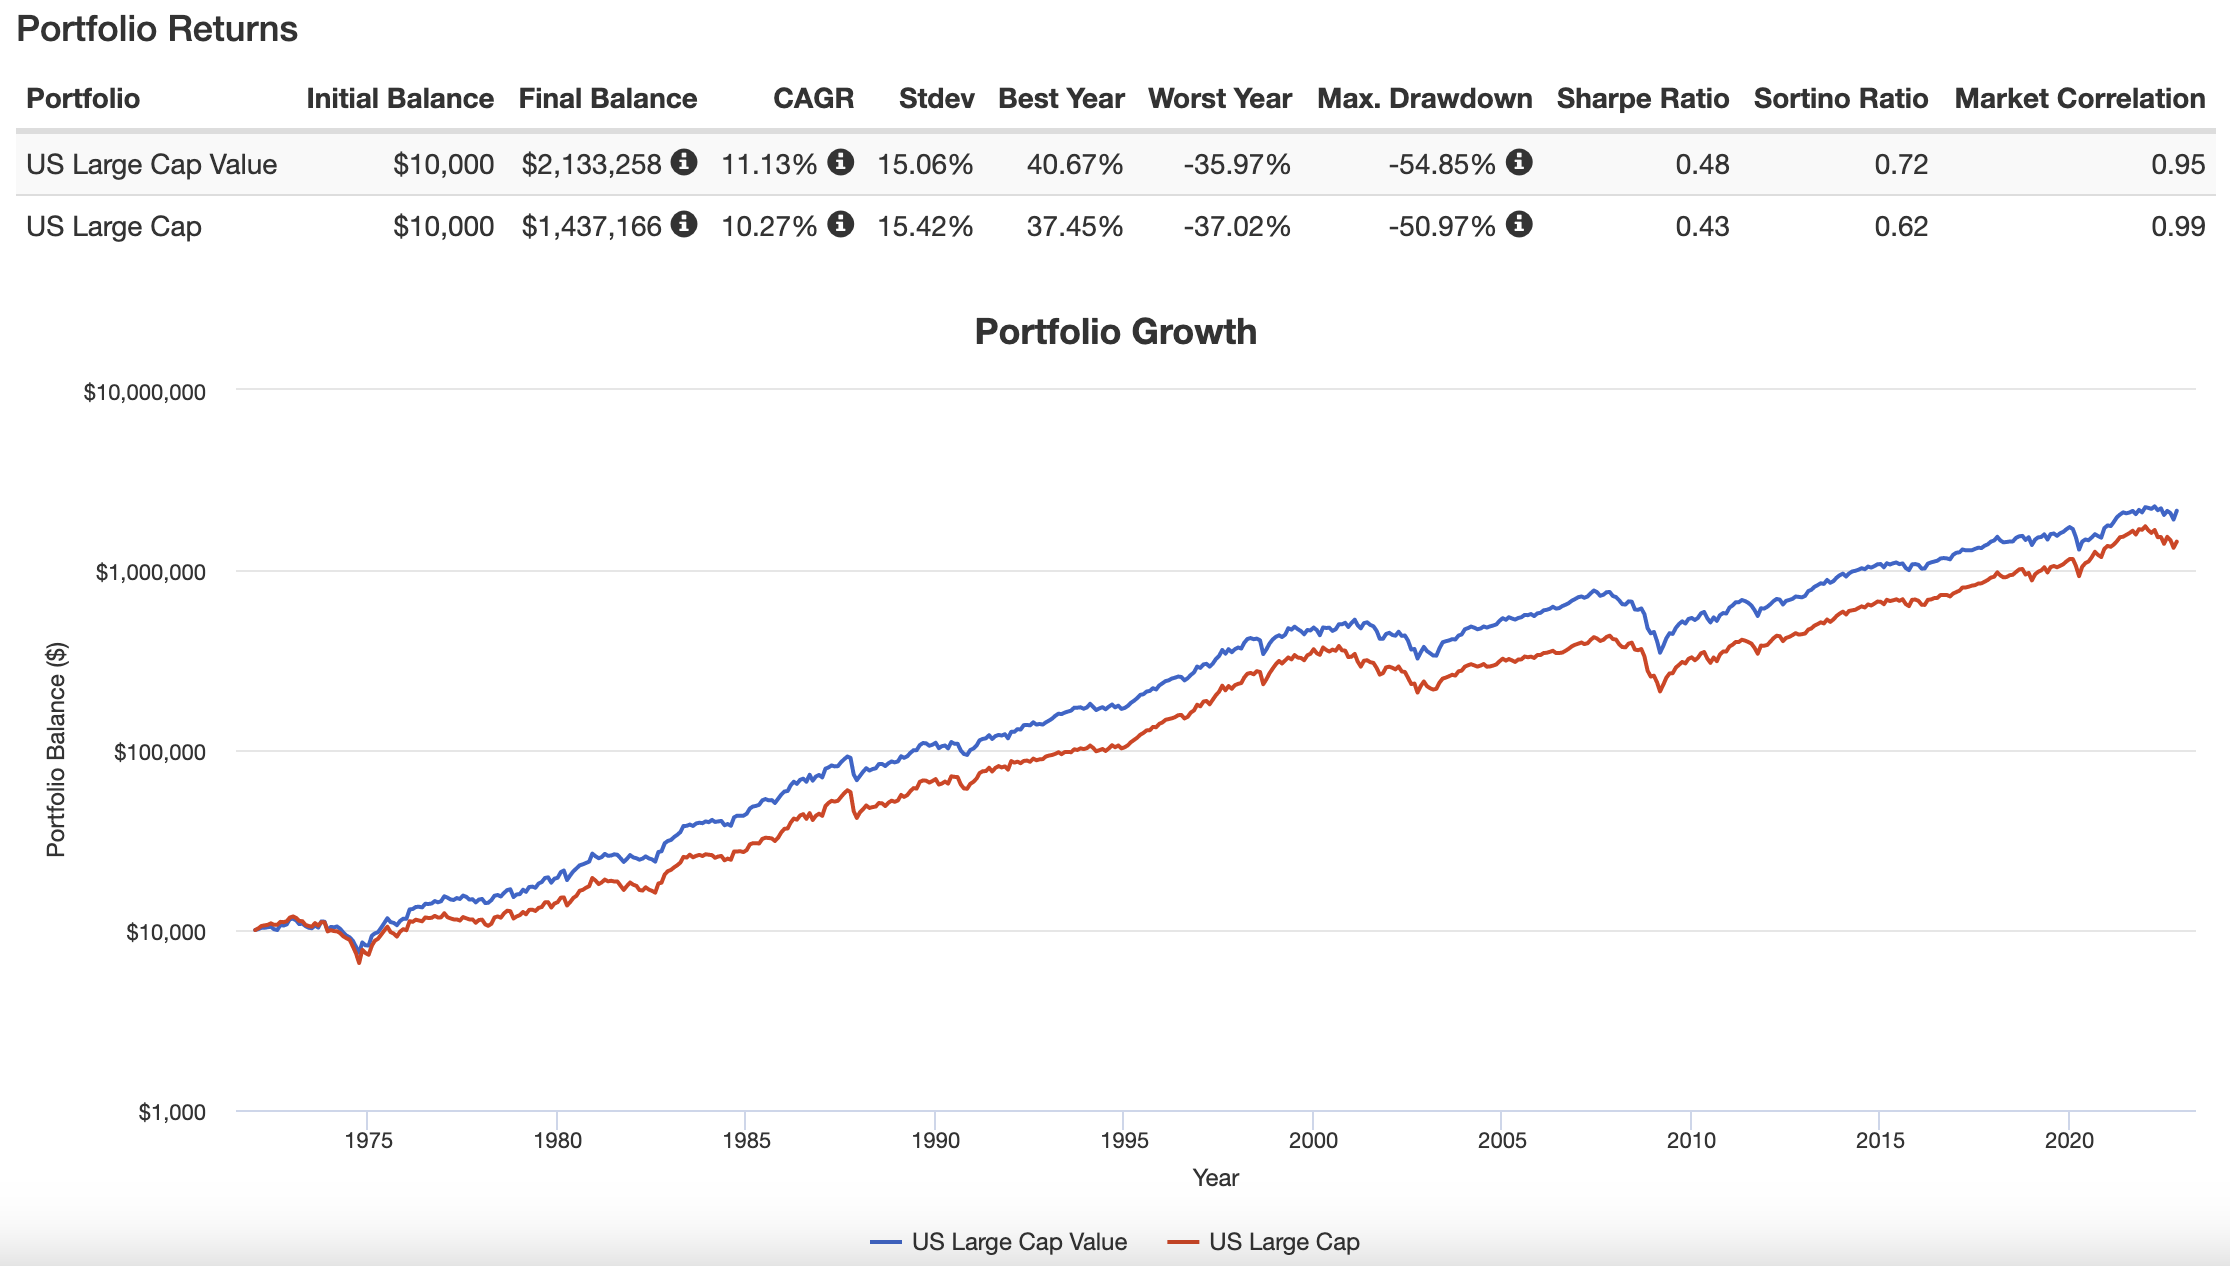 US Large Cap Value versus US Large Cap portfolio returns from 1972 until 2022